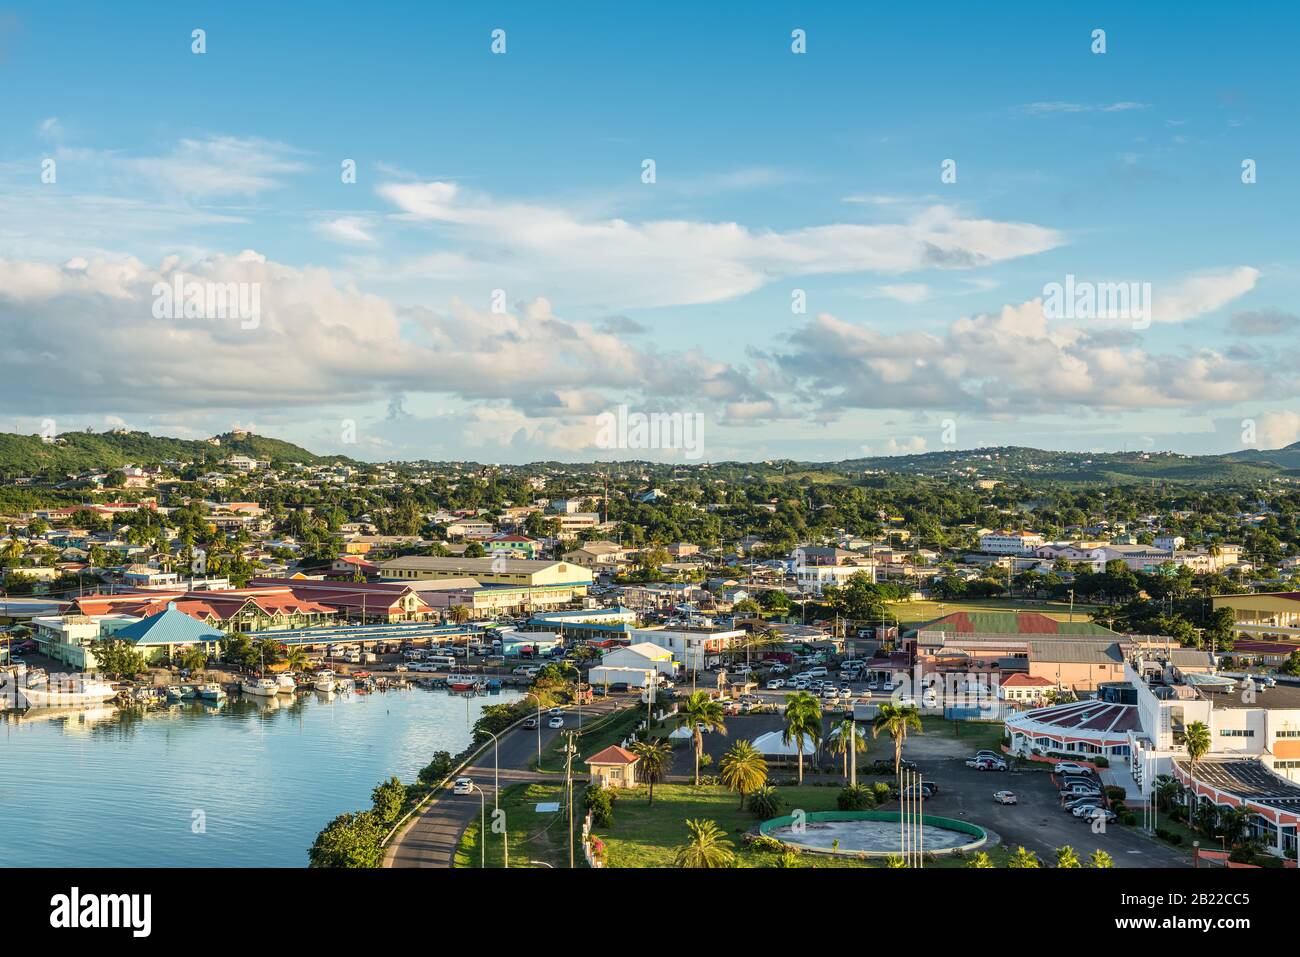 St. John's, Antigua und Barbuda - 19. Dezember 2018: Stadtbild der Insel St John's, Antigua, es ist Zeit der Dämmerung. Stockfoto